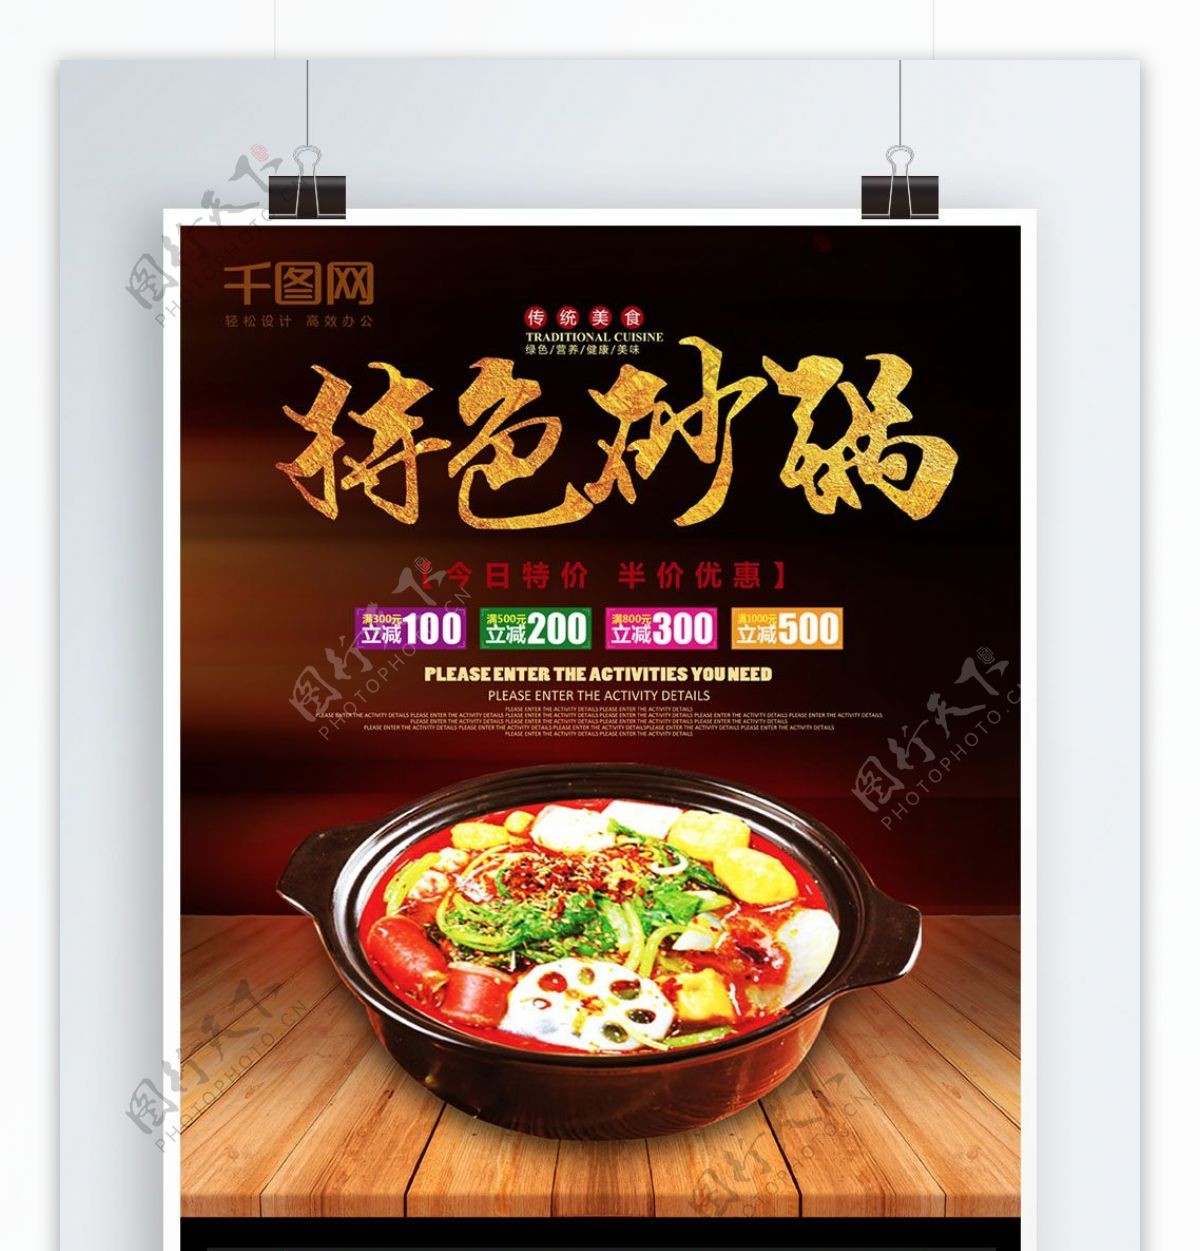 特色砂锅餐厅宣传美食海报